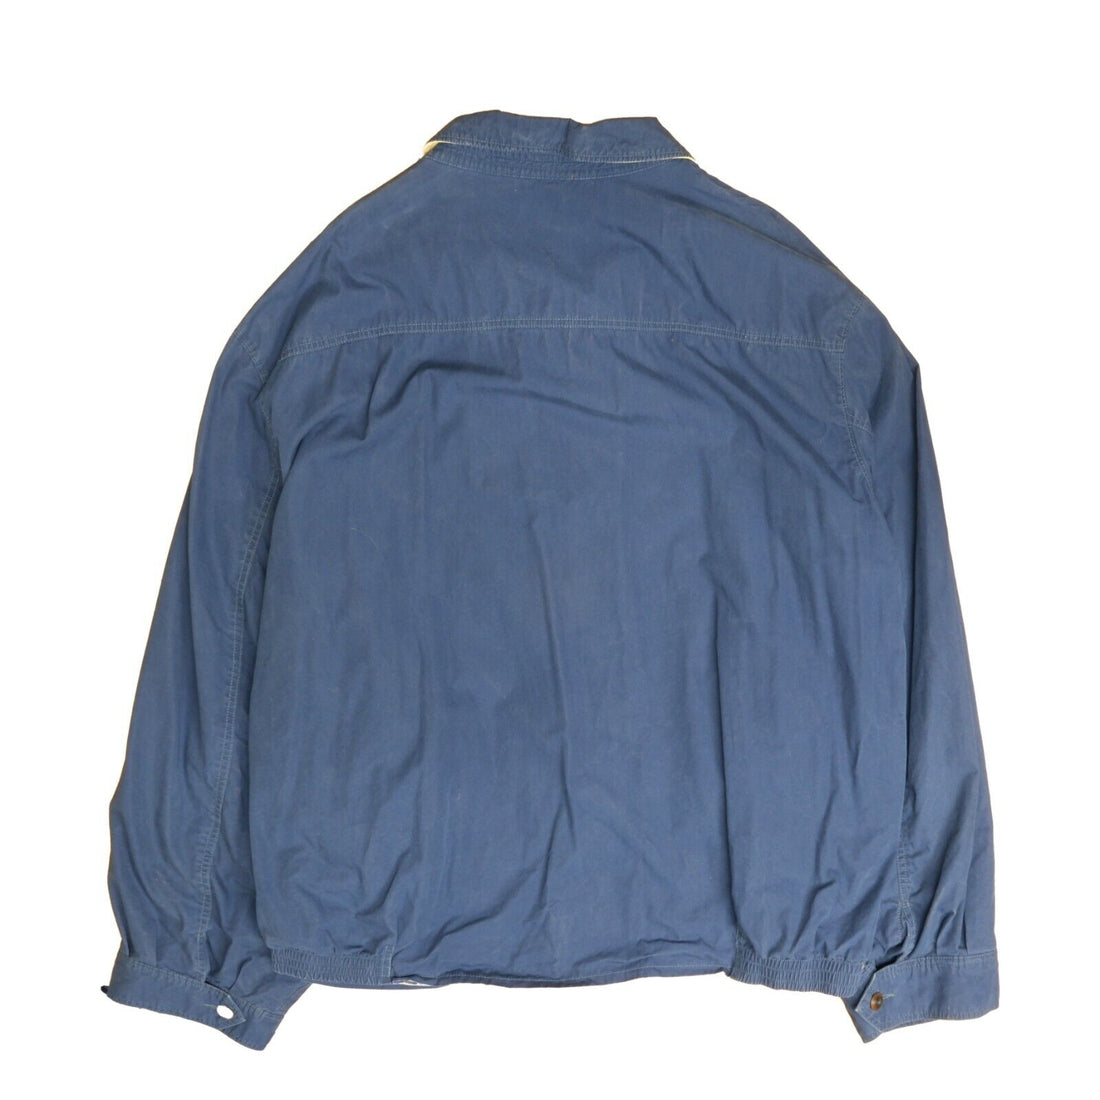 Vintage Polo Ralph Lauren Harrington Jacket Size 4XL Blue Plaid Lined